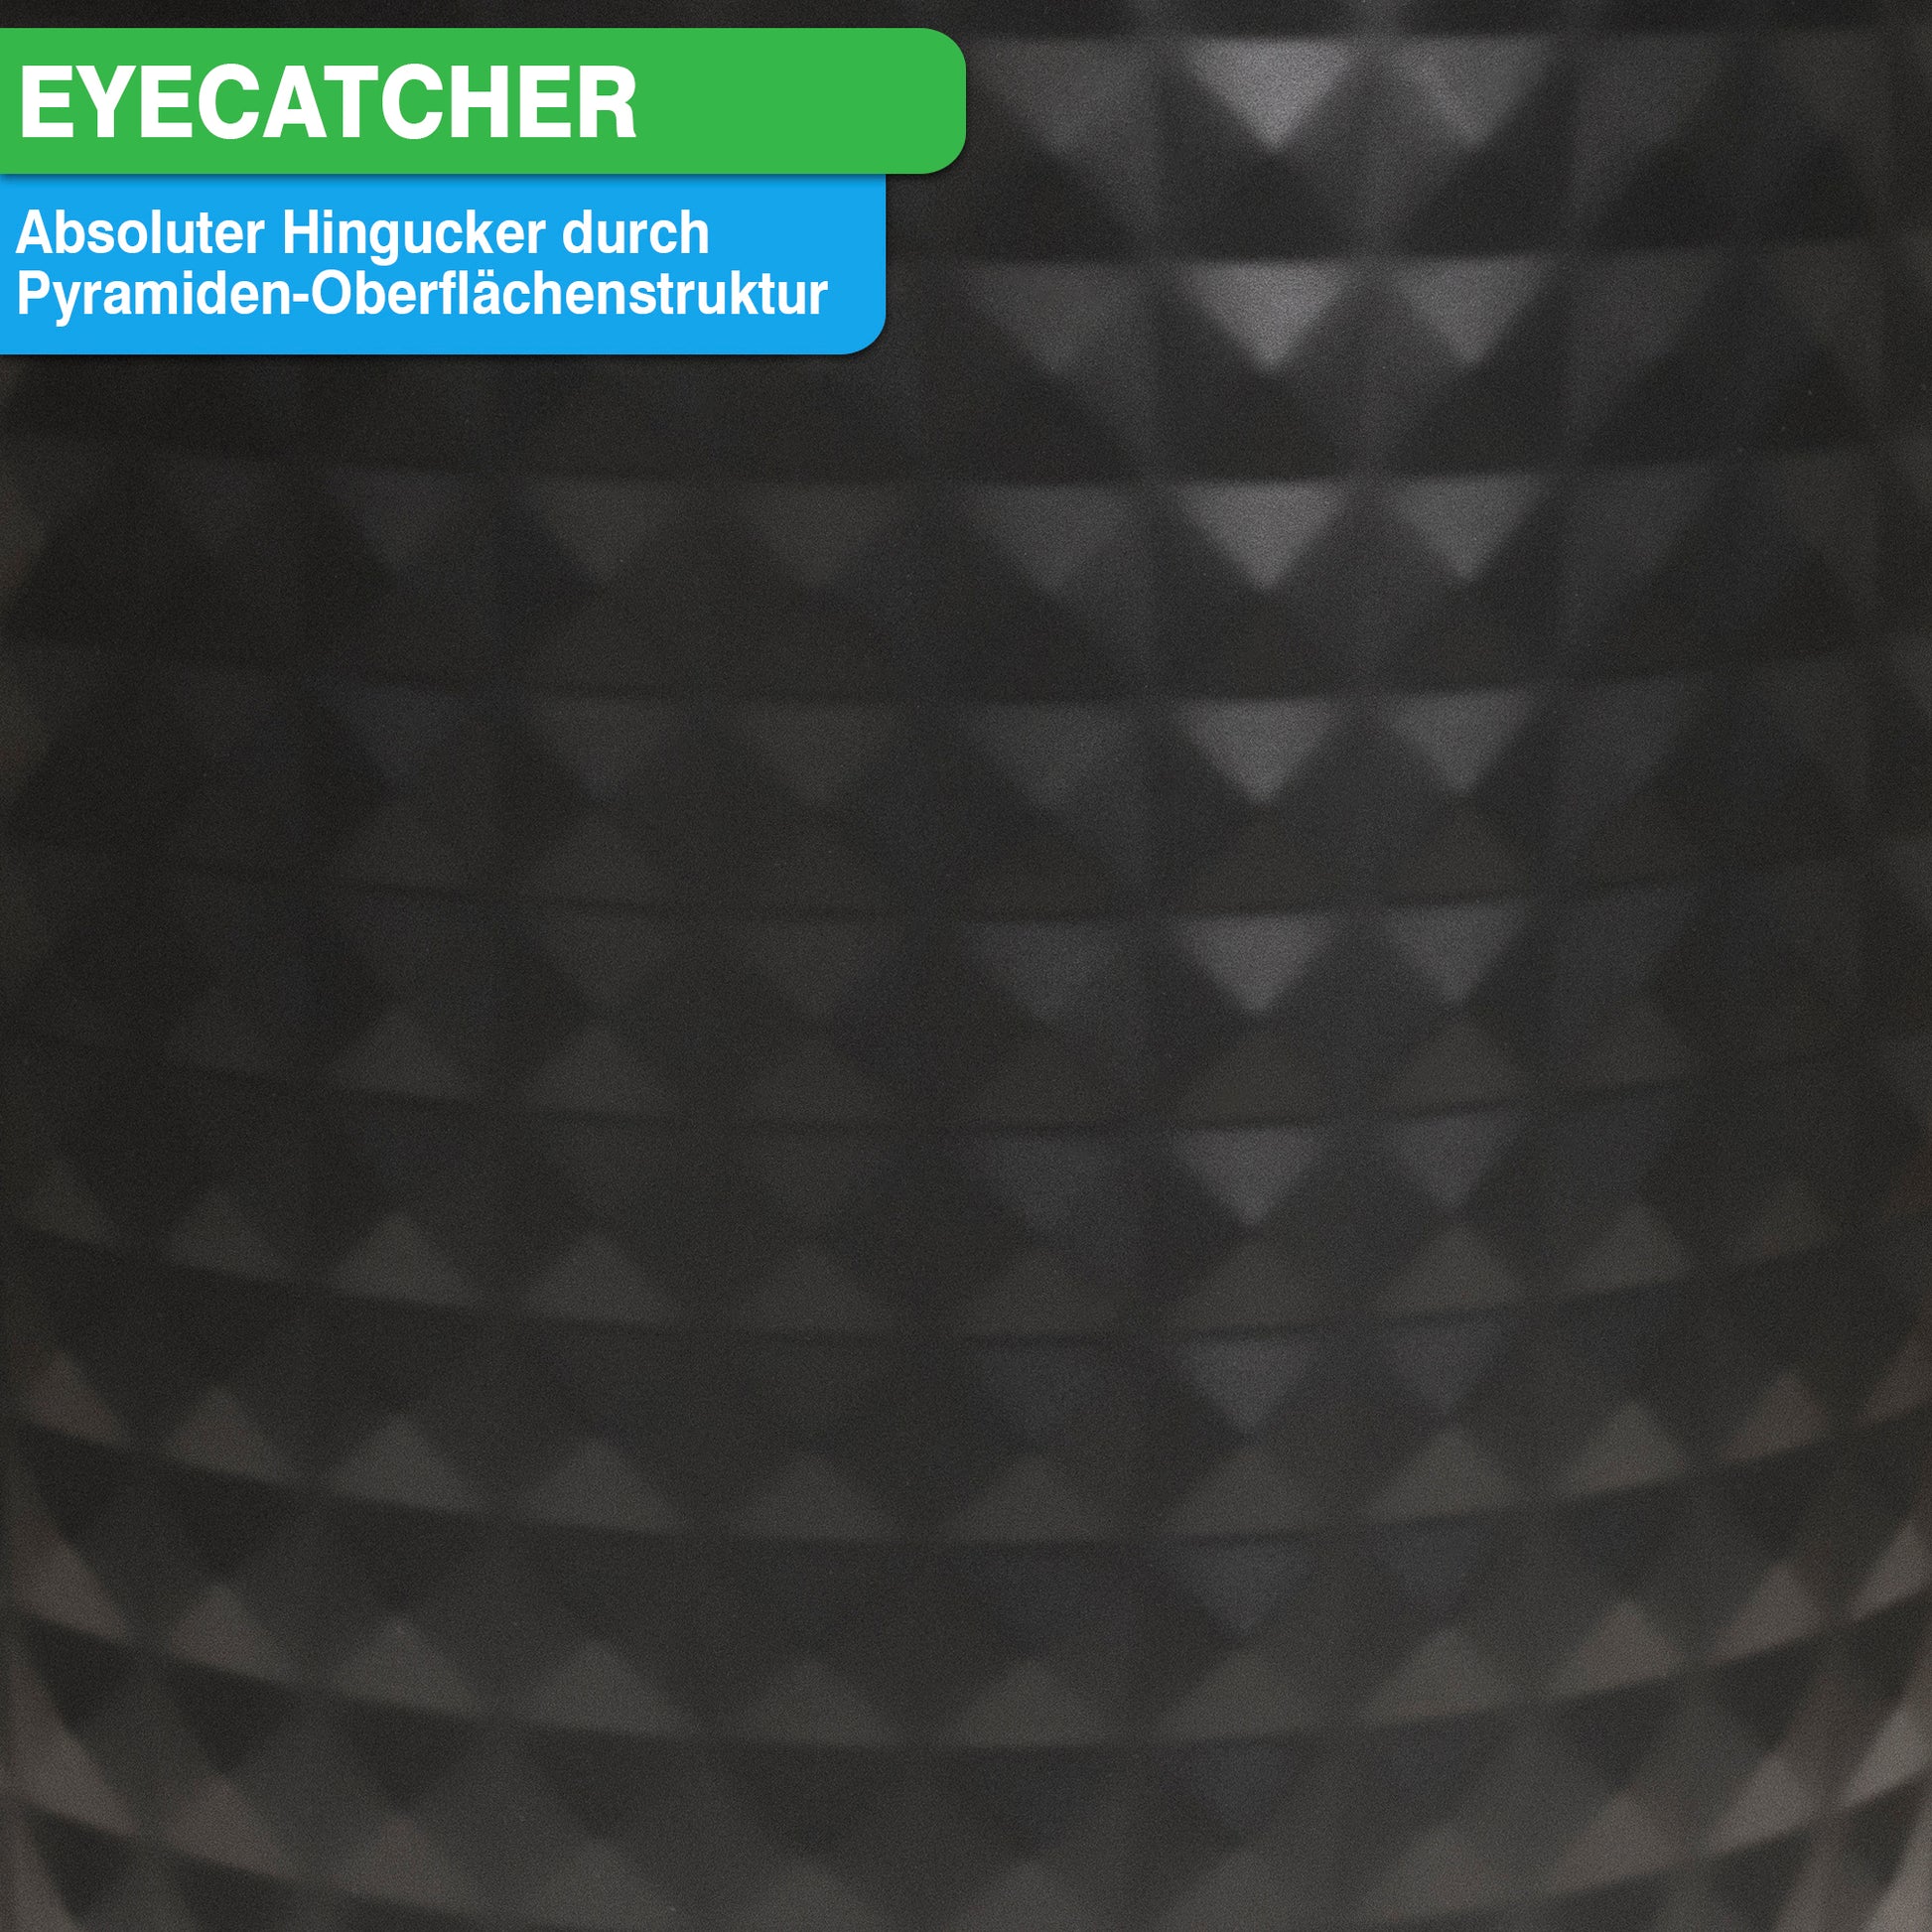 Schwarze strukturierte Oberfläche mit pyramidenförmigen Mustern und dem darüber in fetten Buchstaben geschriebenen Wort „Eyecatcher“, erinnert an ein elegantes YourCasa® Edelstahl Mülleimer Bad 5L – Pyramiden-Oberflächenstruktur-Design von yourcasa-de.